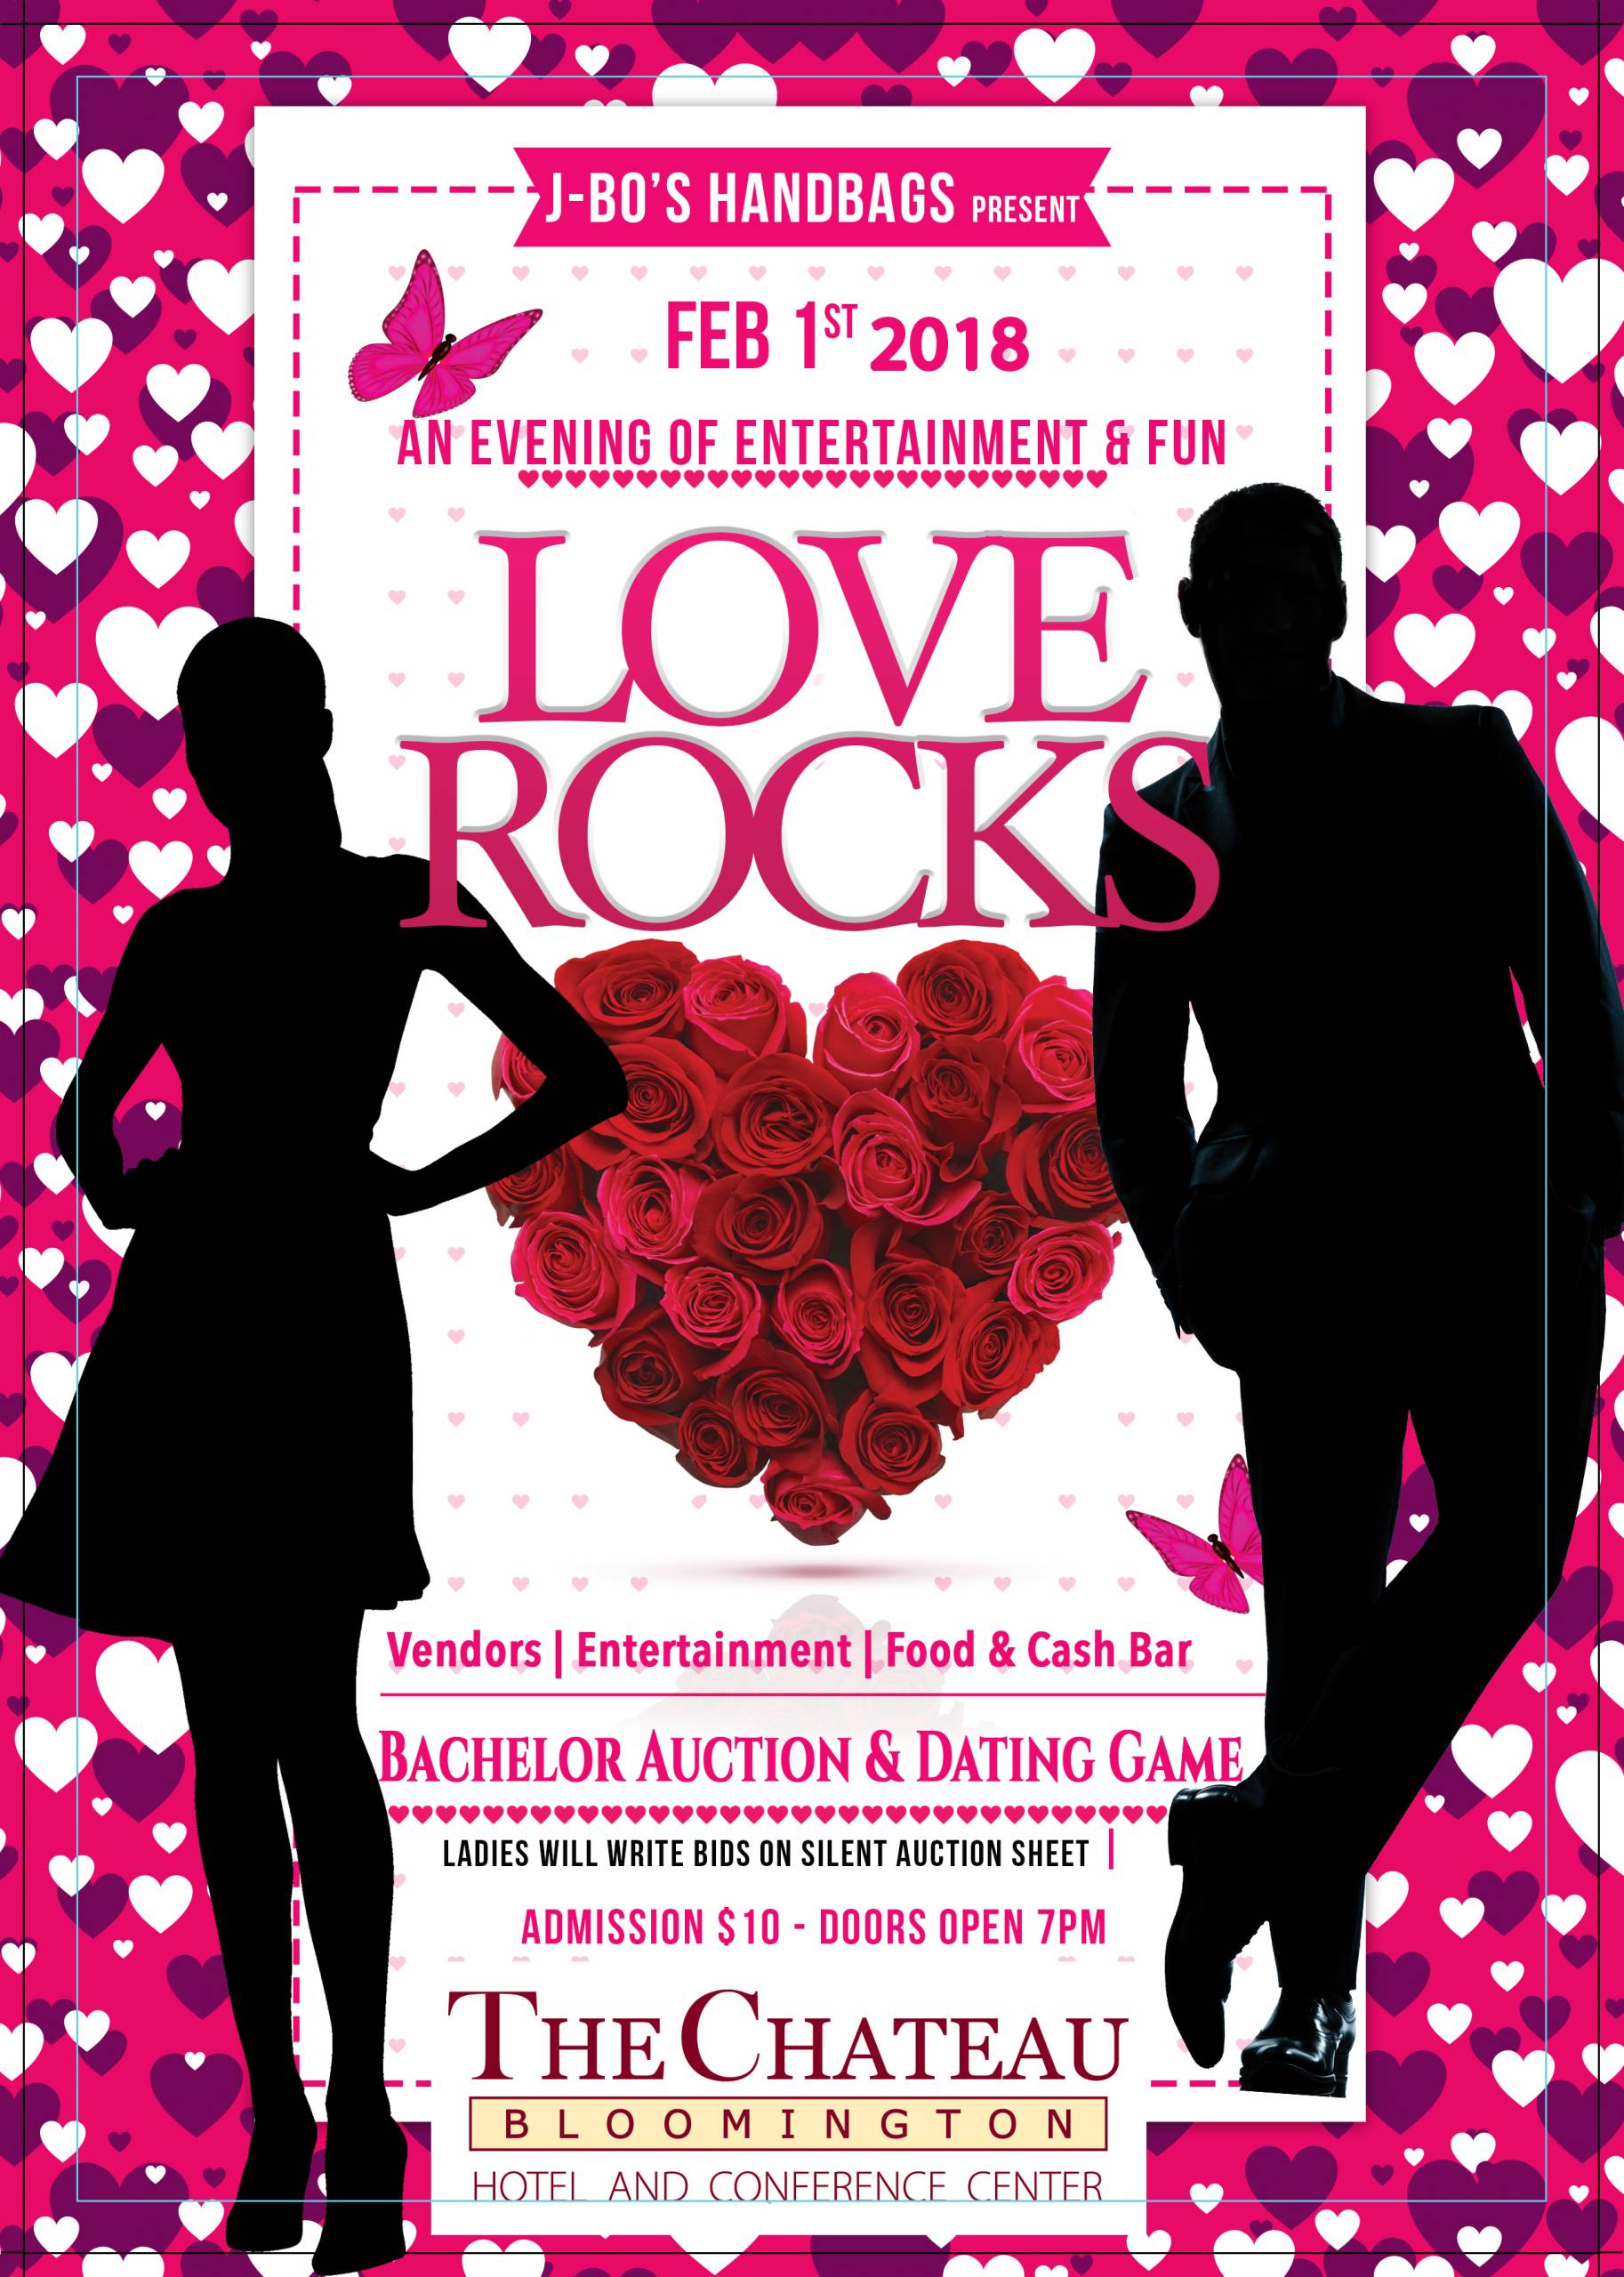 Love Rocks - Pre-Valentine's Day Fun